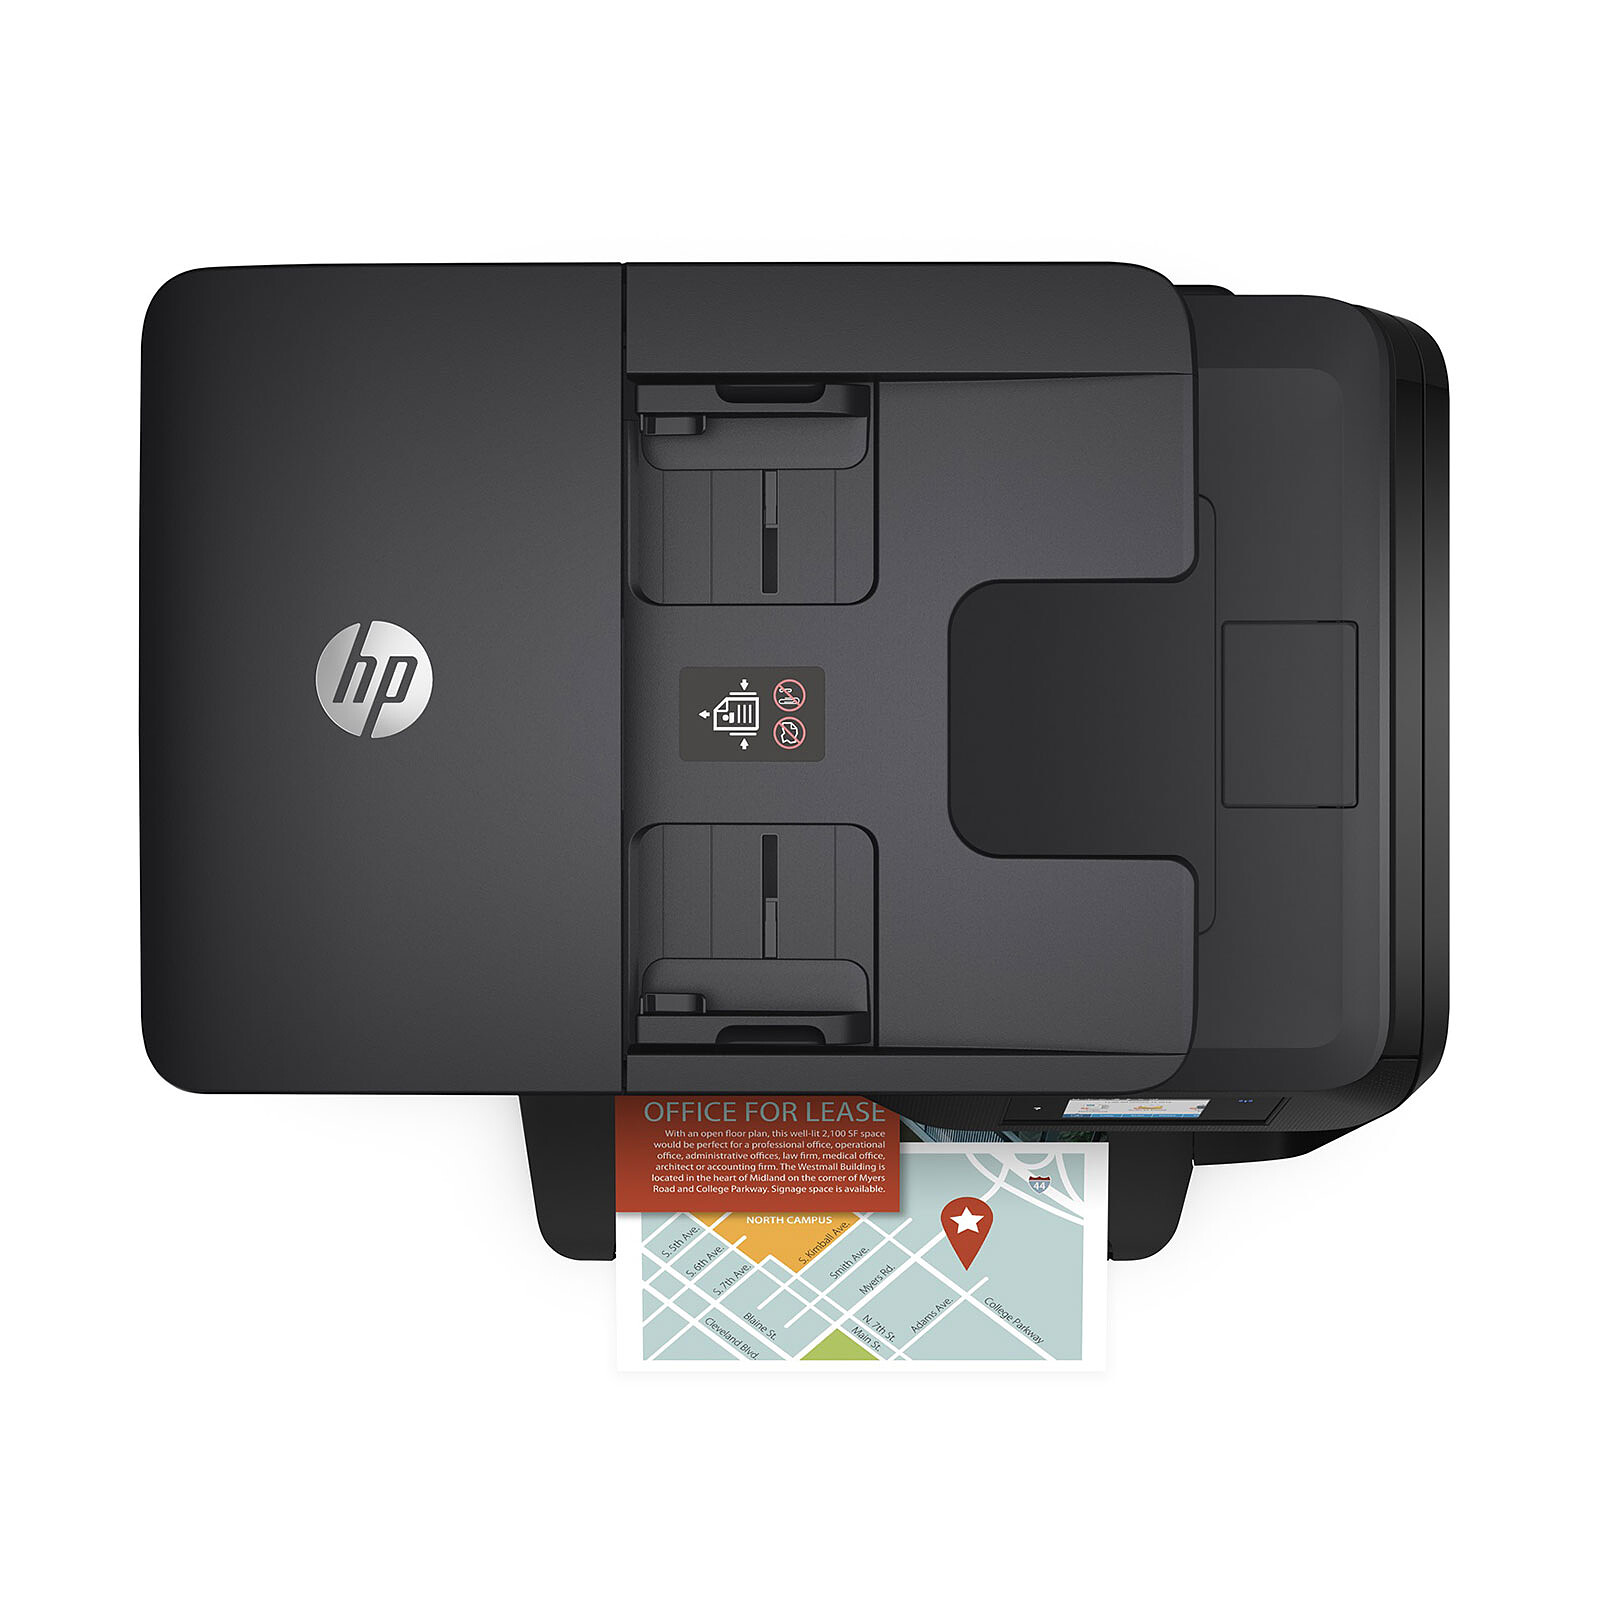 Hp Officejet Pro 8715 Imprimante Multifonction Garantie 3 Ans Ldlc